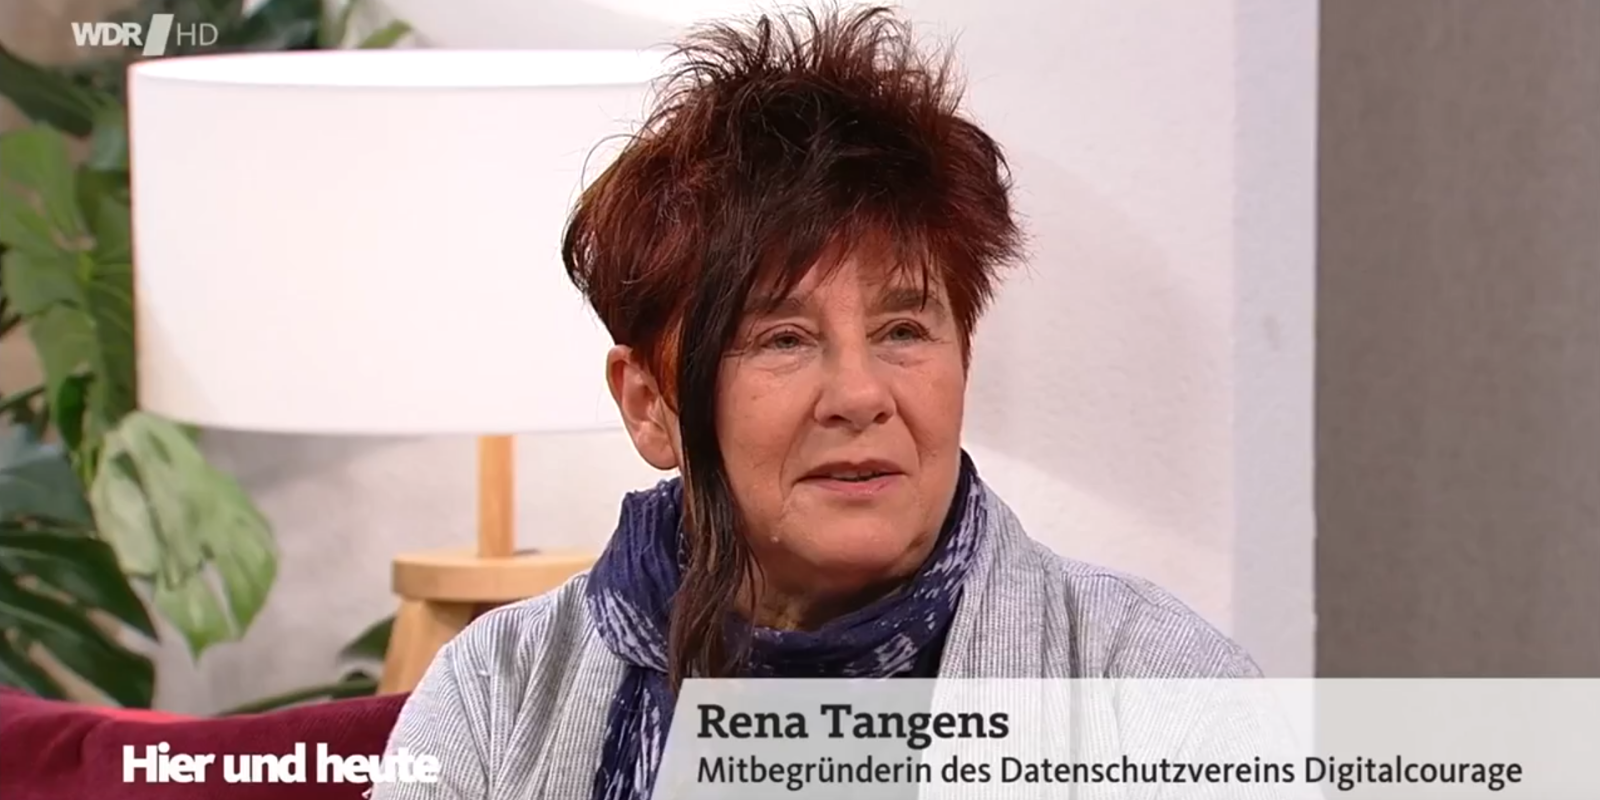 Bildausschnitt von Rena Tangens als Studiogast bei „Hier und heute“